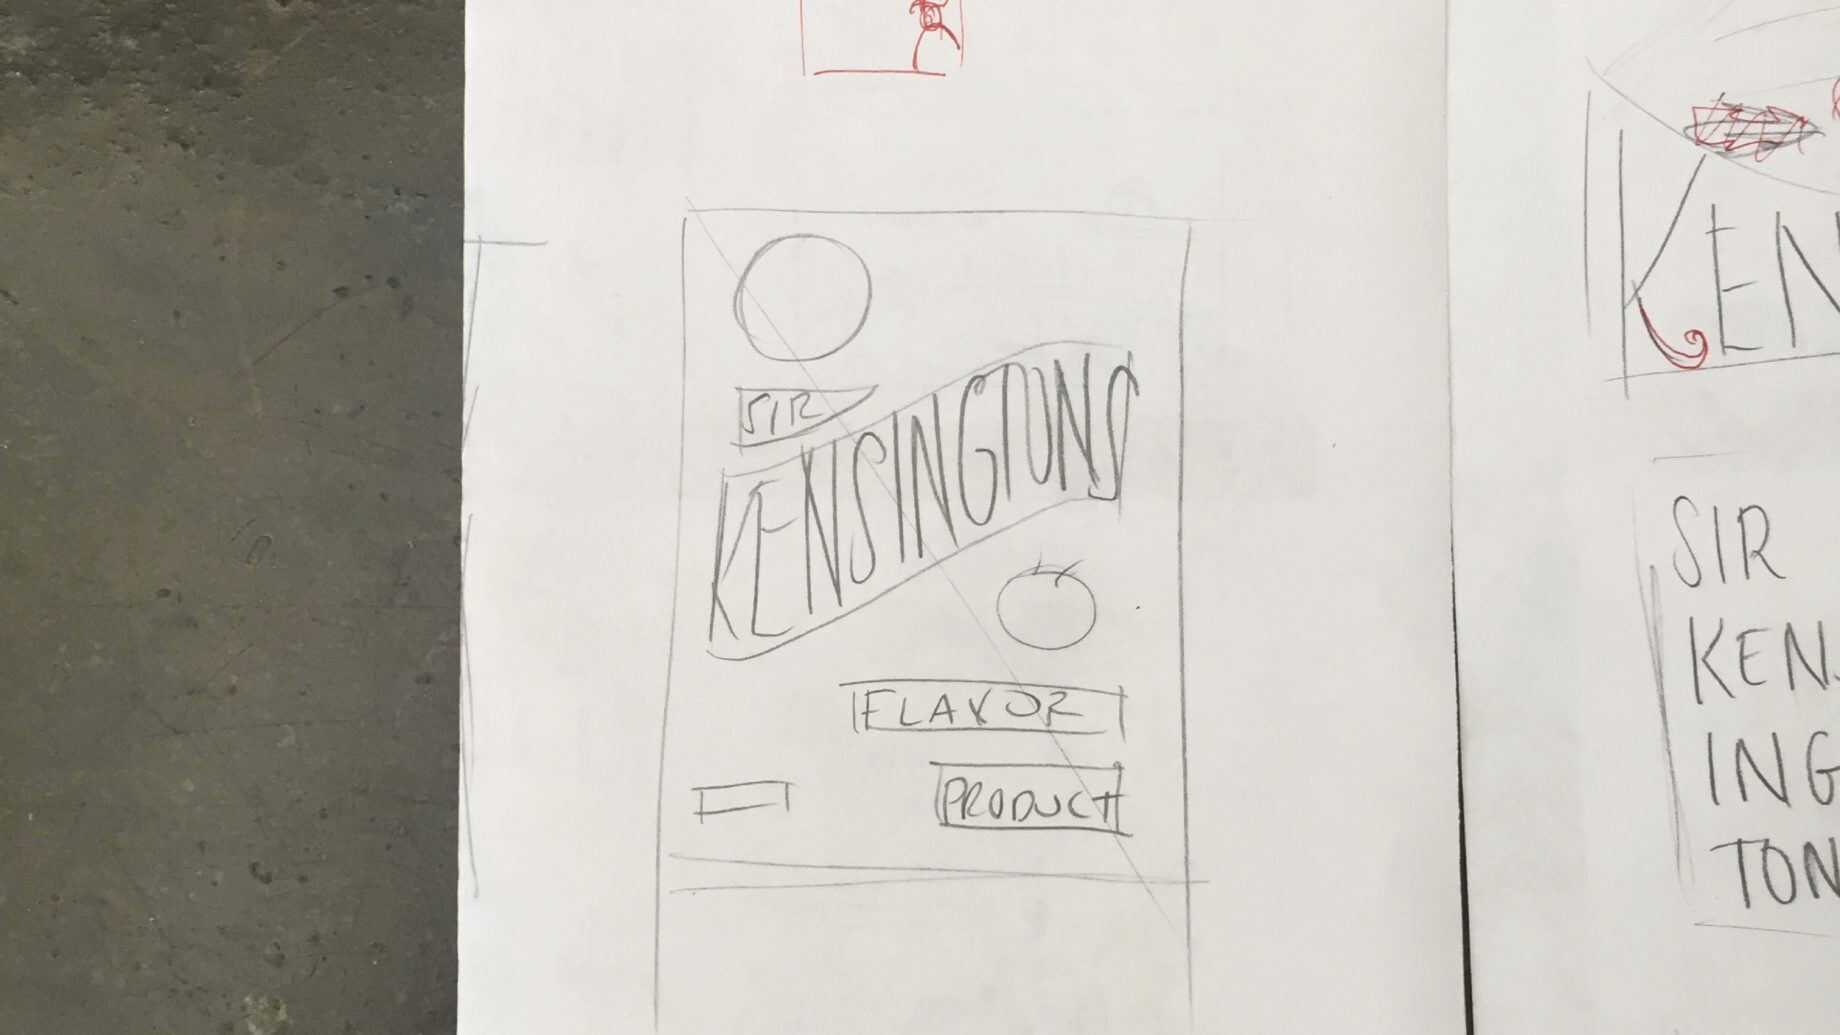 Sir Kensingtons Redesign Logo Process 01